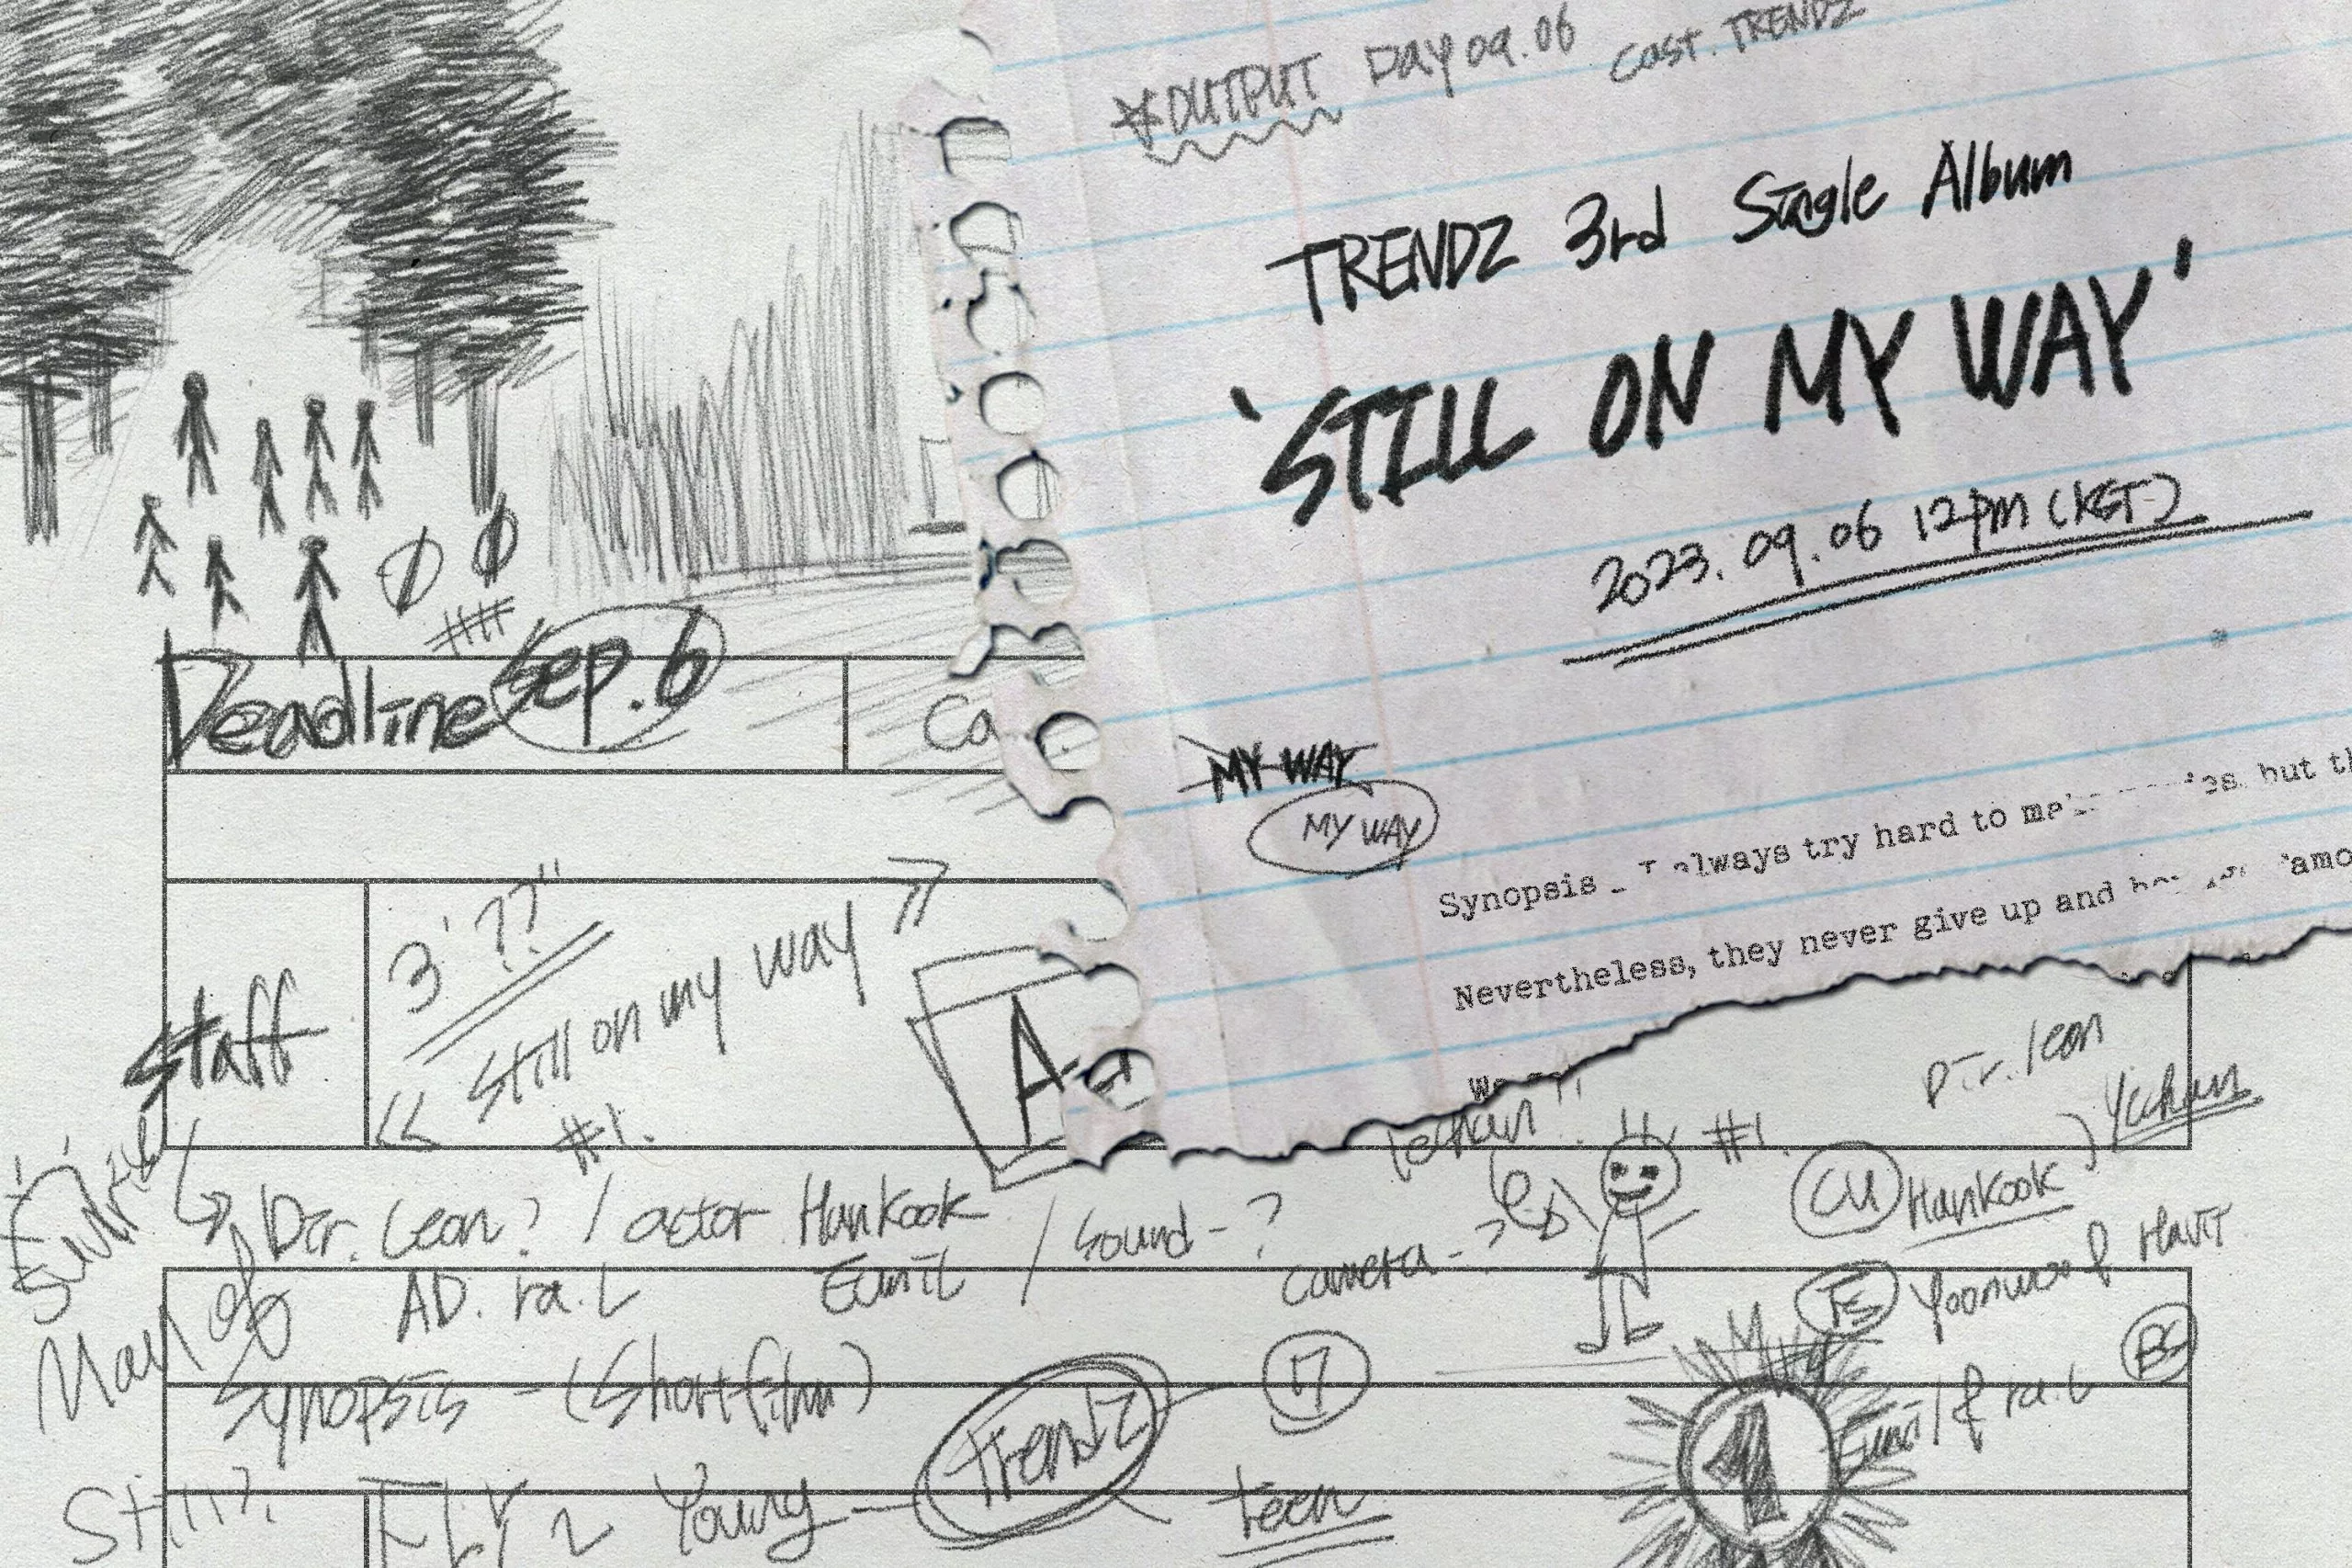 TRENDZ официально подтверждают дату камбэка с третьим сингл-альбомом "STILL ON MY WAY"